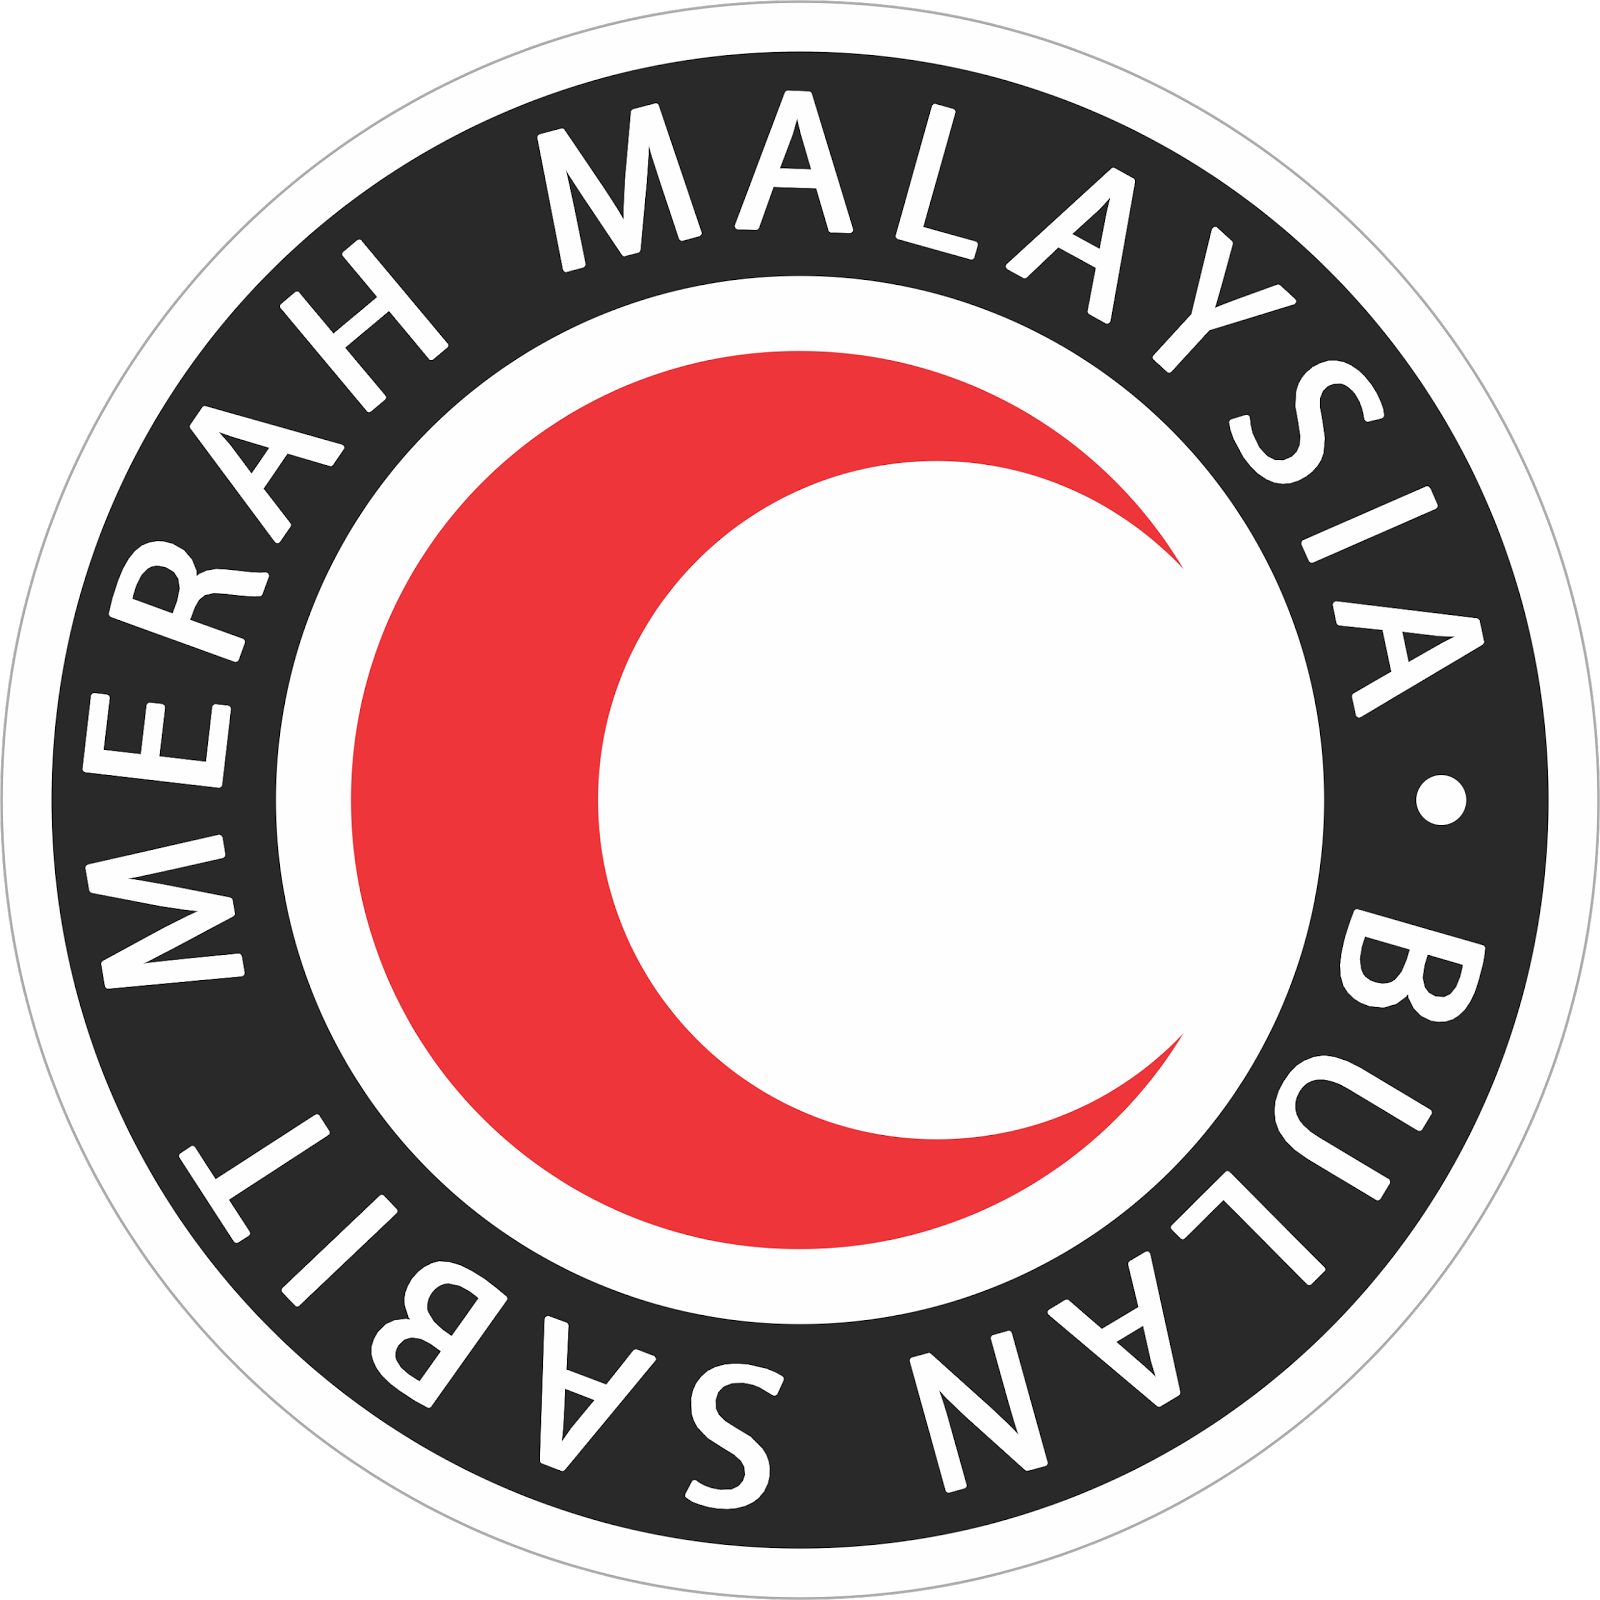  Bulan  Sabit  Merah  Malaysia  PBSM 